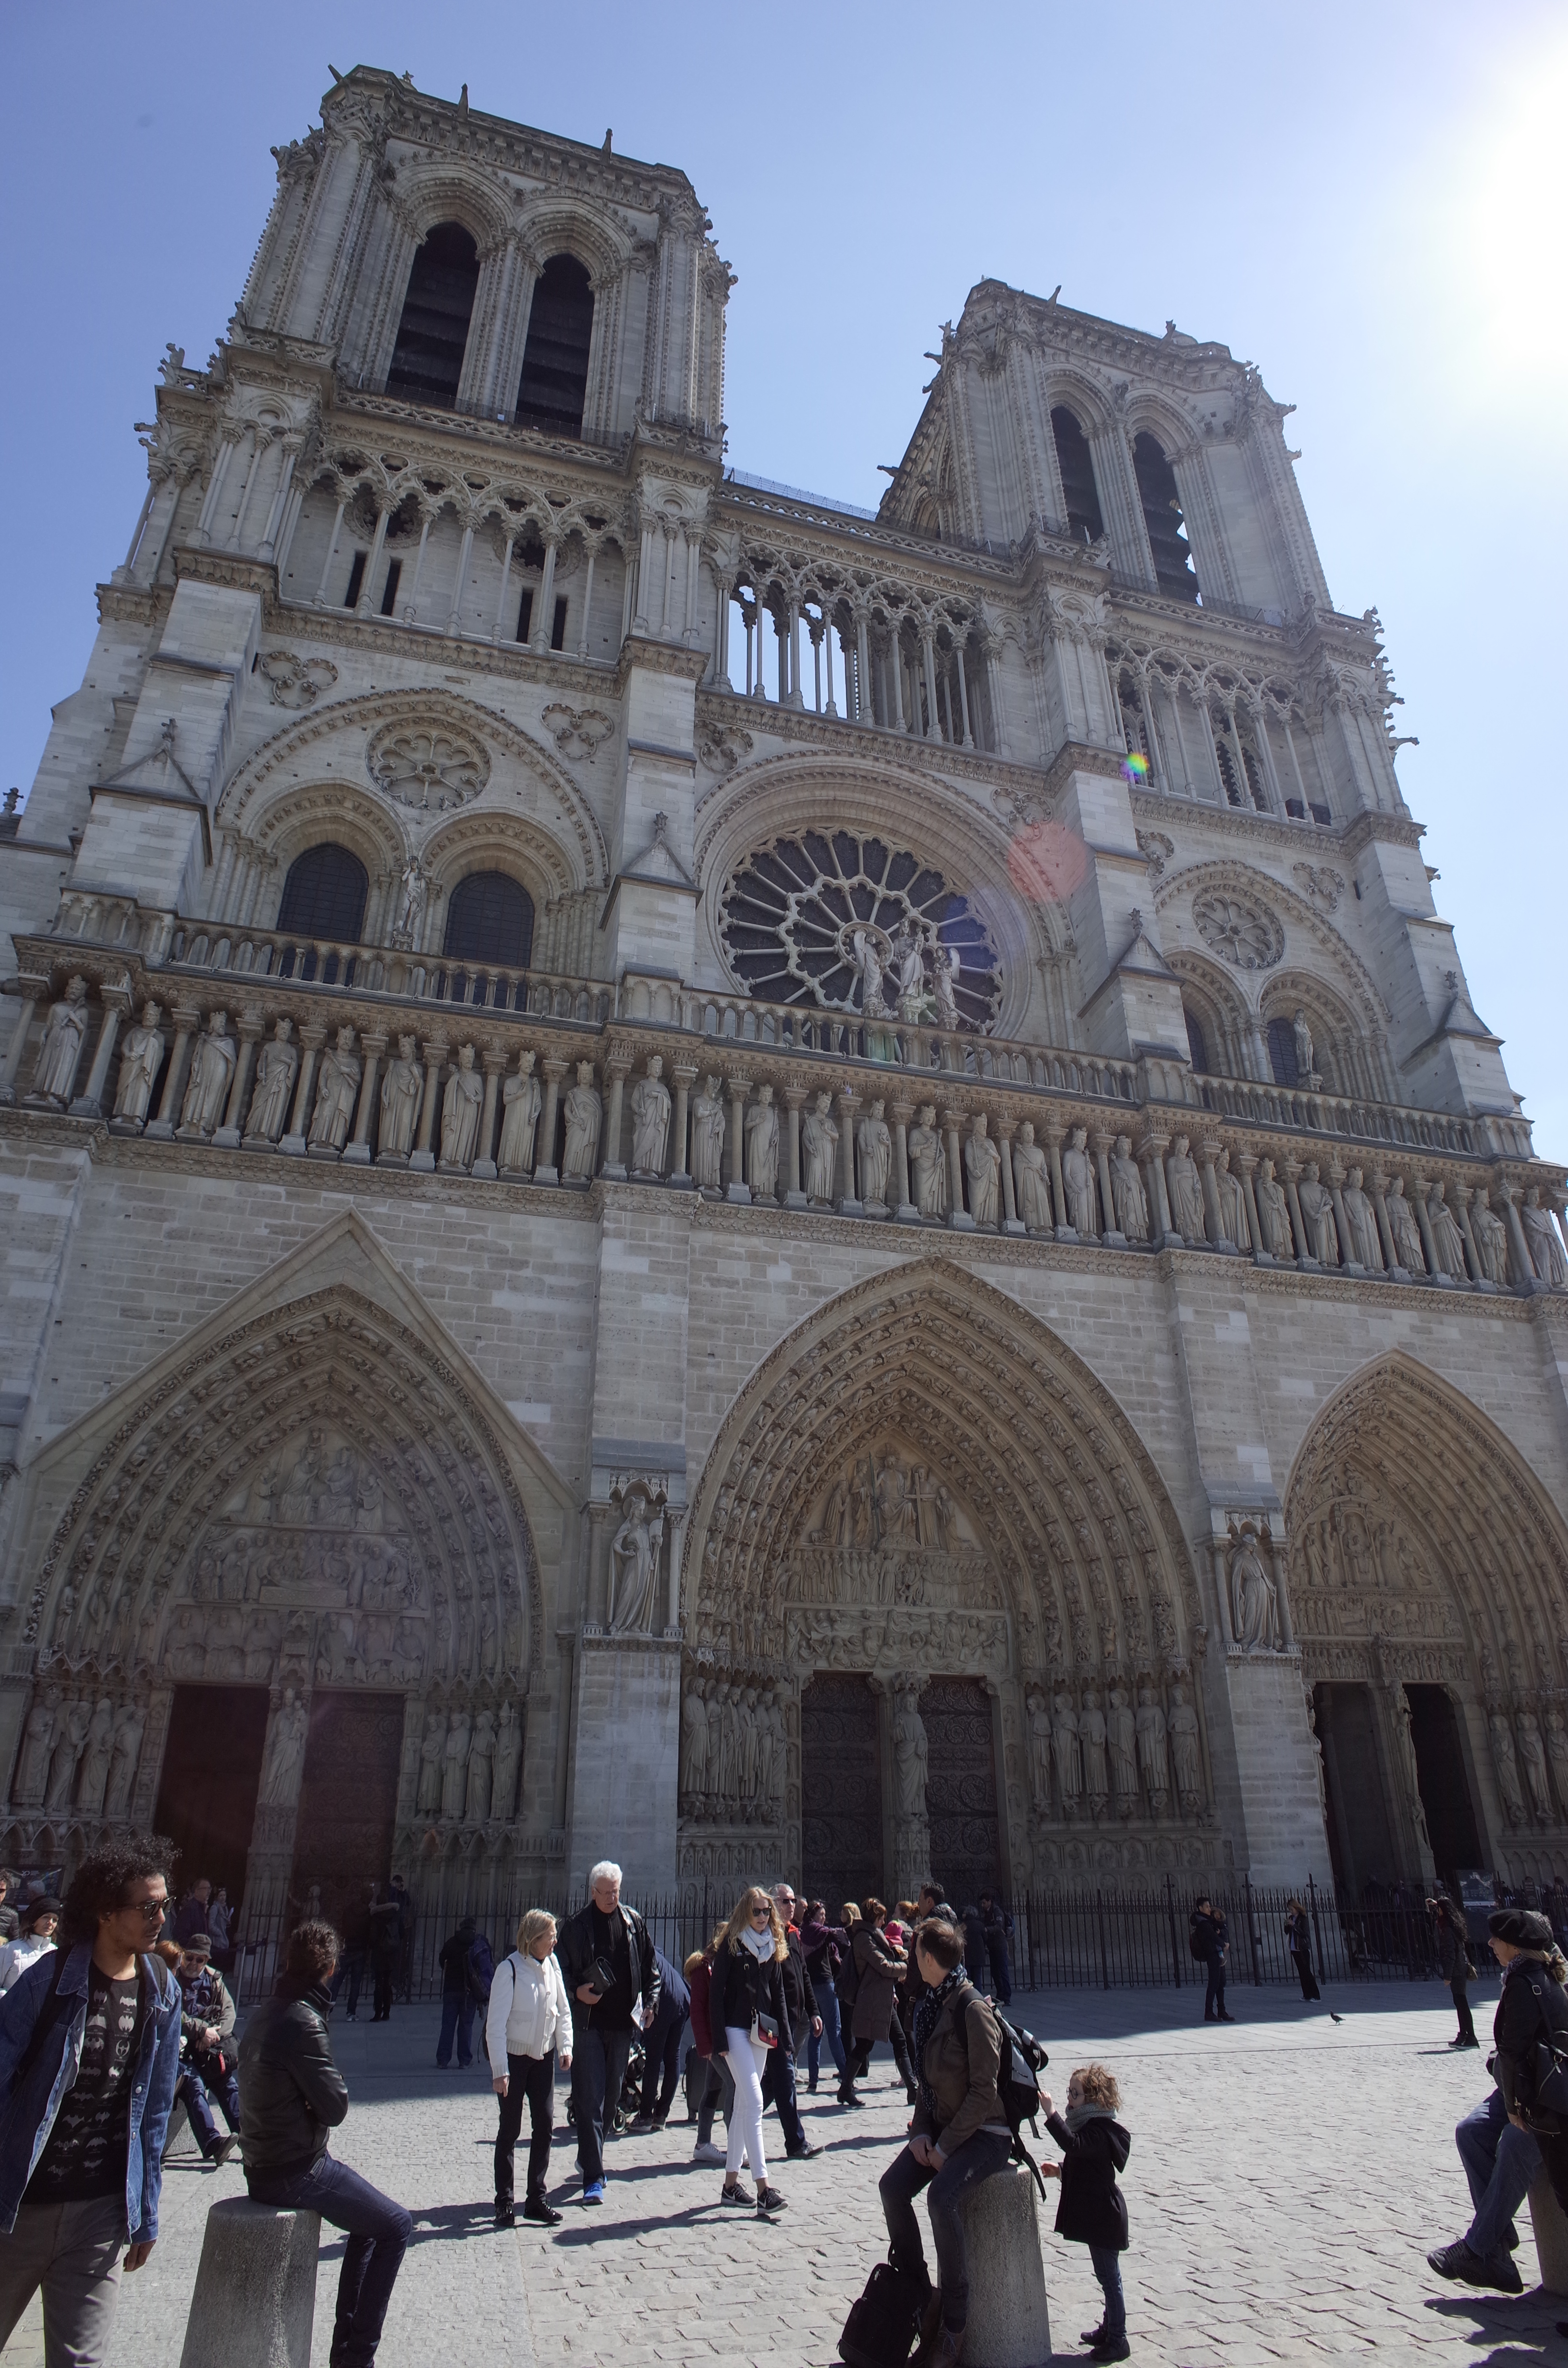 ノートルダム大聖堂の美しい内部再び 火災を乗り越え再建の成功を祈って Beautiful Inside Notre Dame Cathedral Before Devastating Fire n R